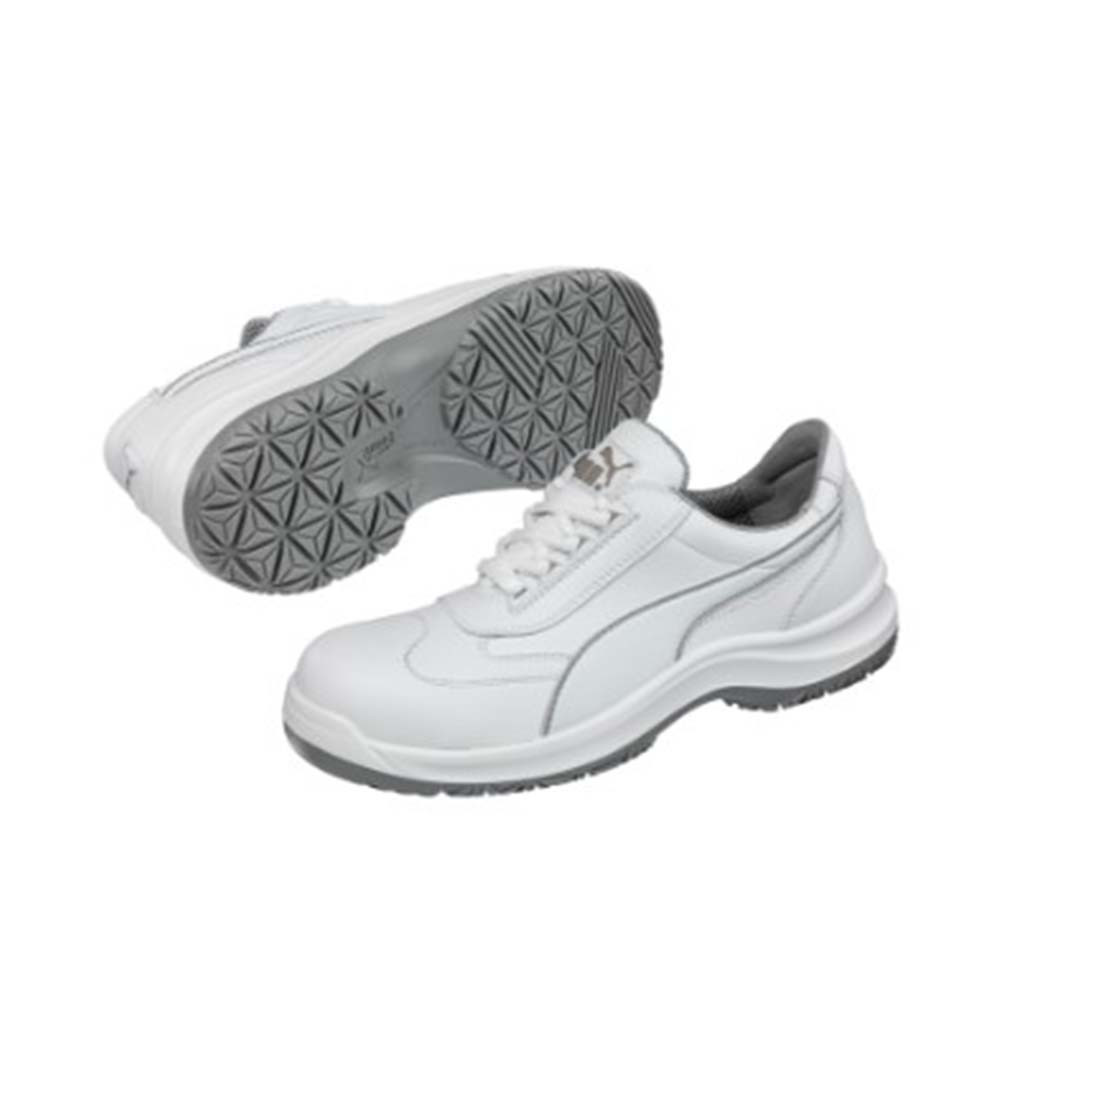 Chaussures de sécurité Puma S2 Clarity - Les chaussures de protection